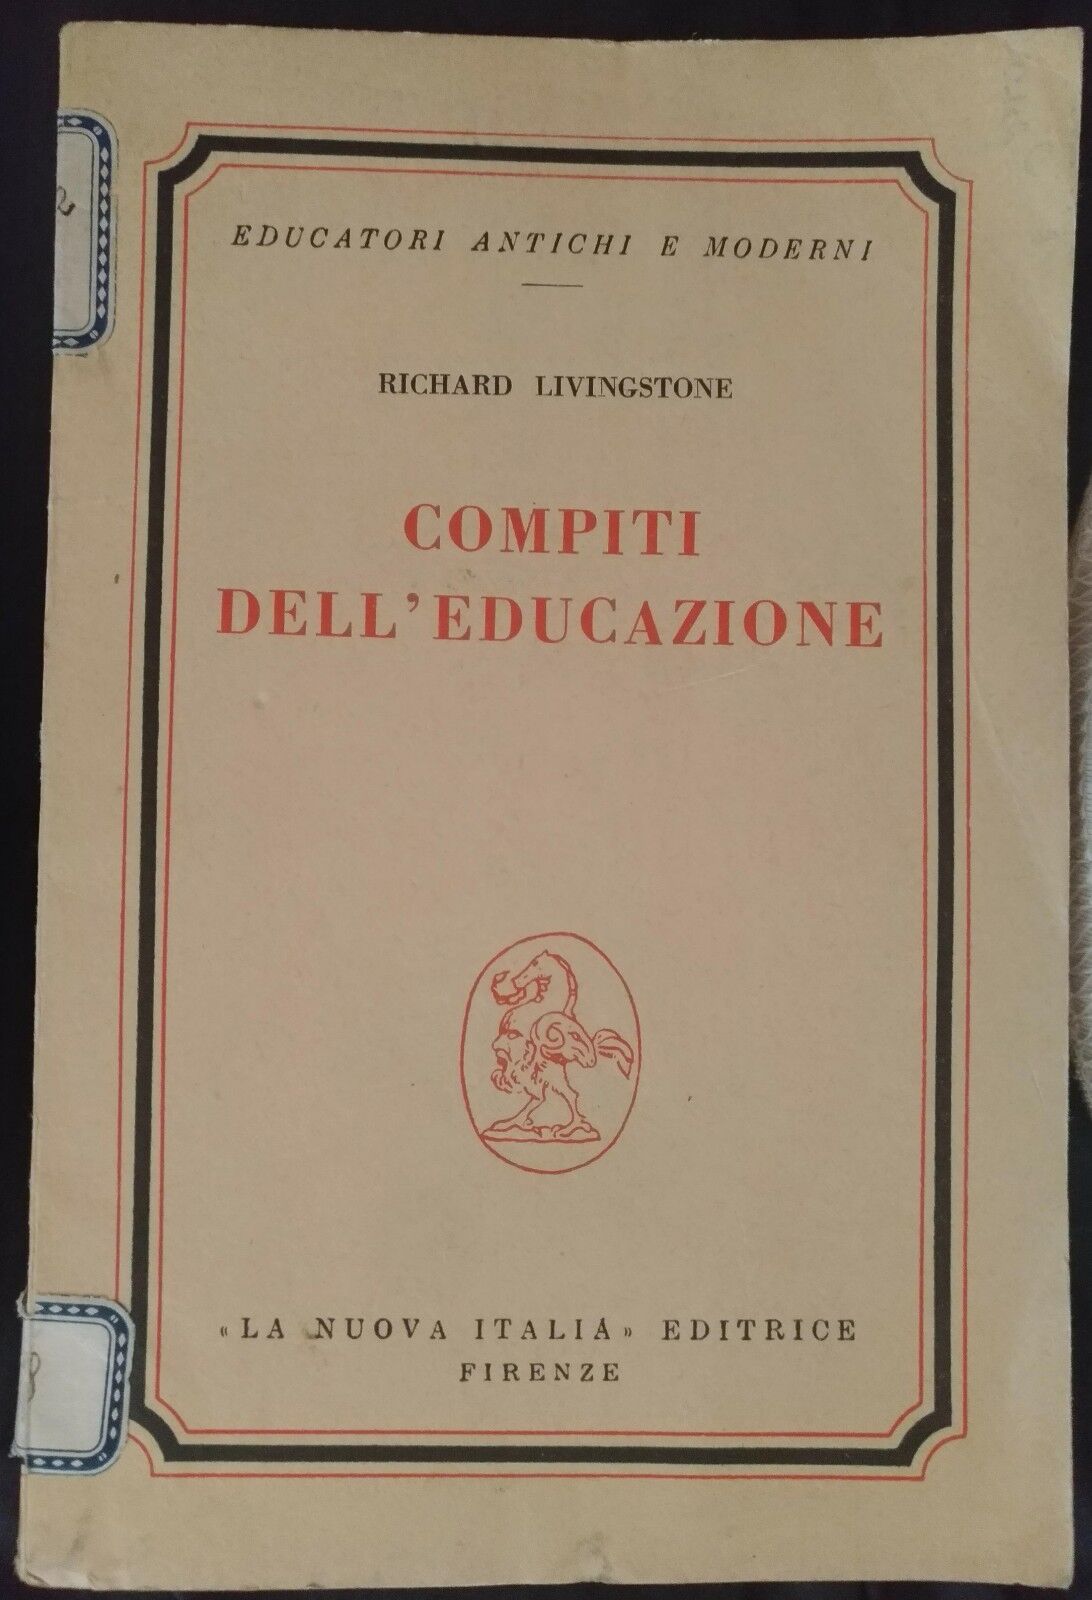  Compiti delL'educazione - Richard Livingstone, 1961,  La Nuova Italia - S